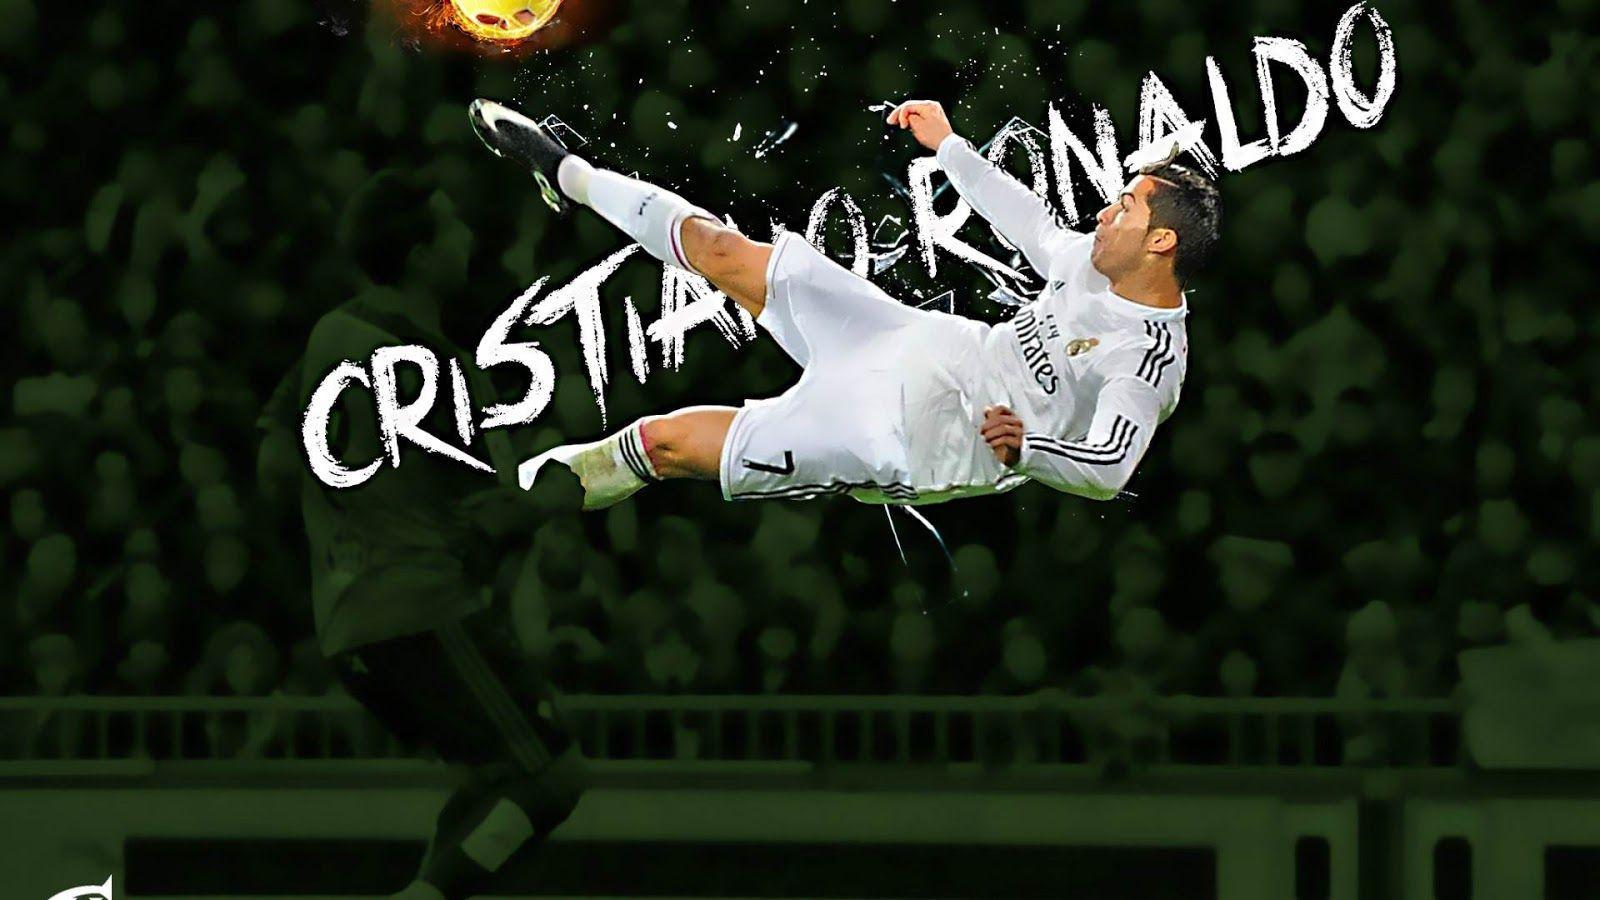 ultigamerz: 105 Cristiano Ronaldo HD wallpaper in 17.4 mb